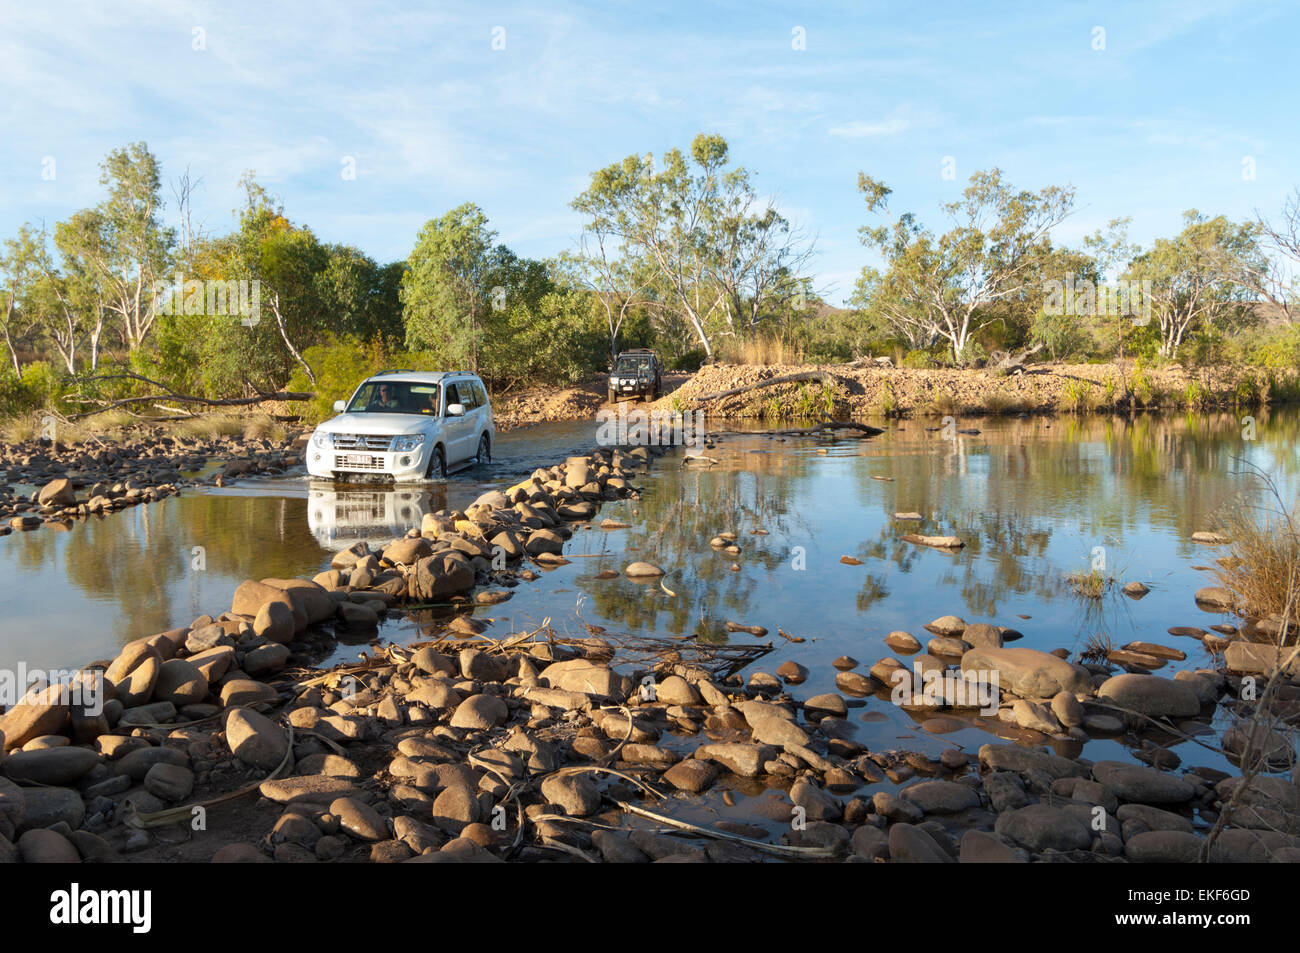 Voiture en traversant une rivière le long de la Gibb River Road, Kimberley, Outback, l'Australie Occidentale, WA, Australie Banque D'Images